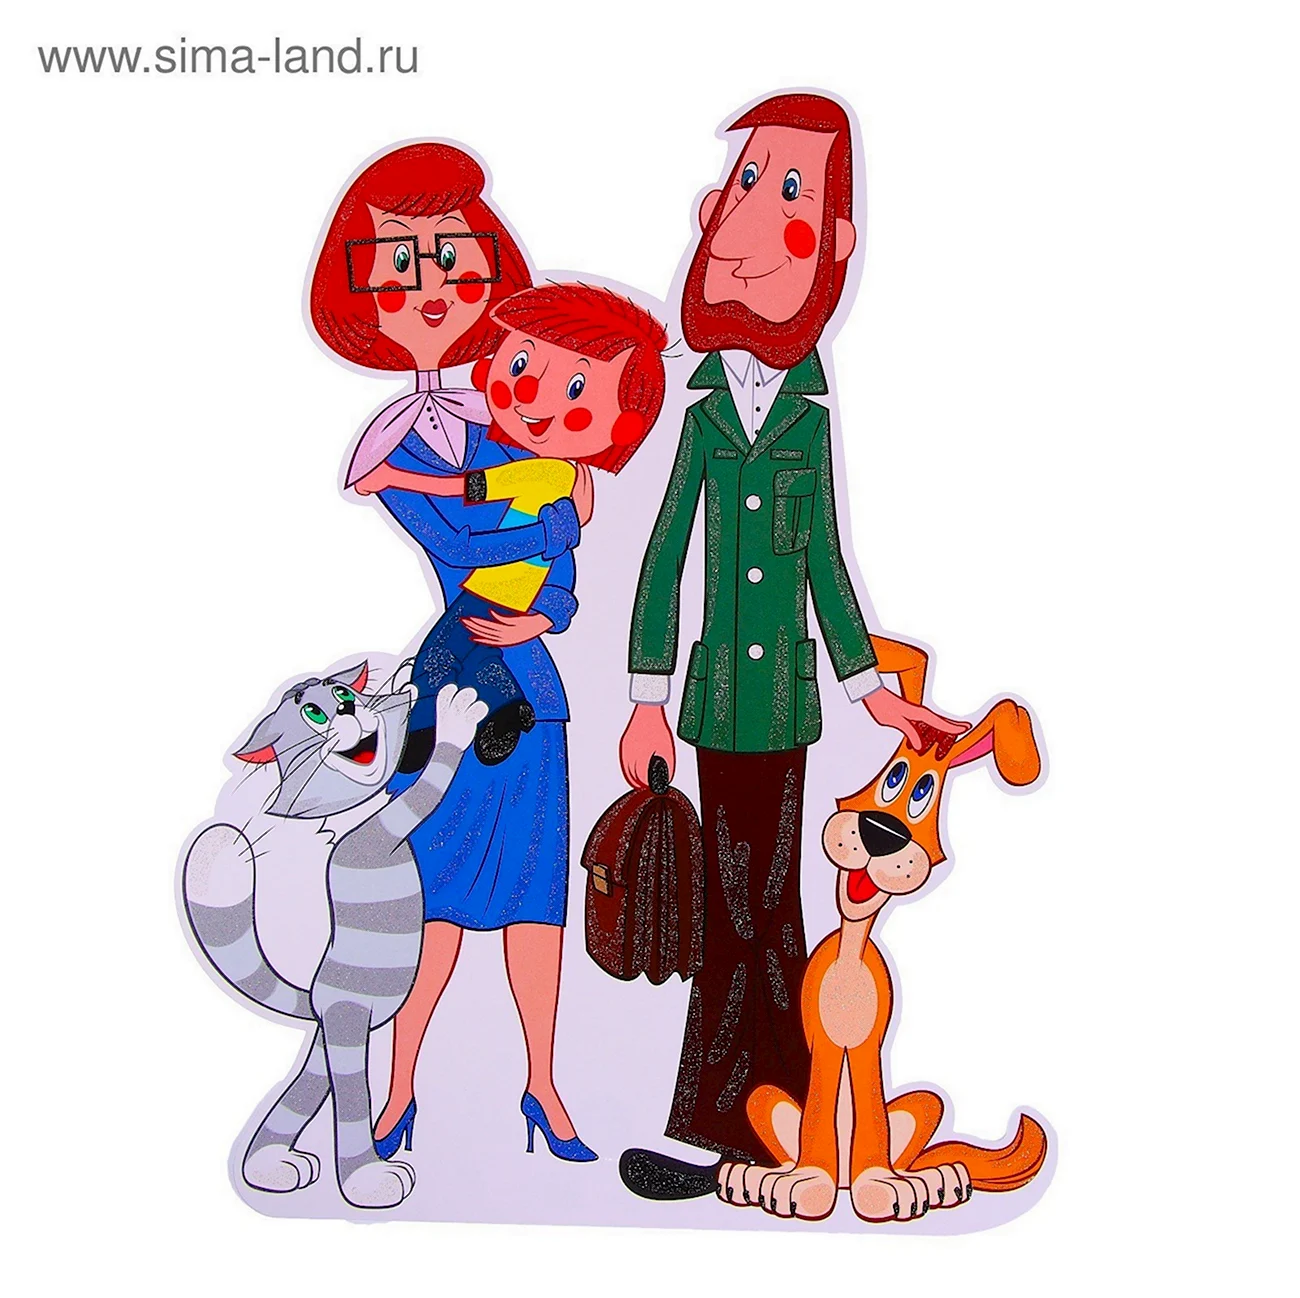 Простоквашино семья дяди Федора. Картинка из мультфильма